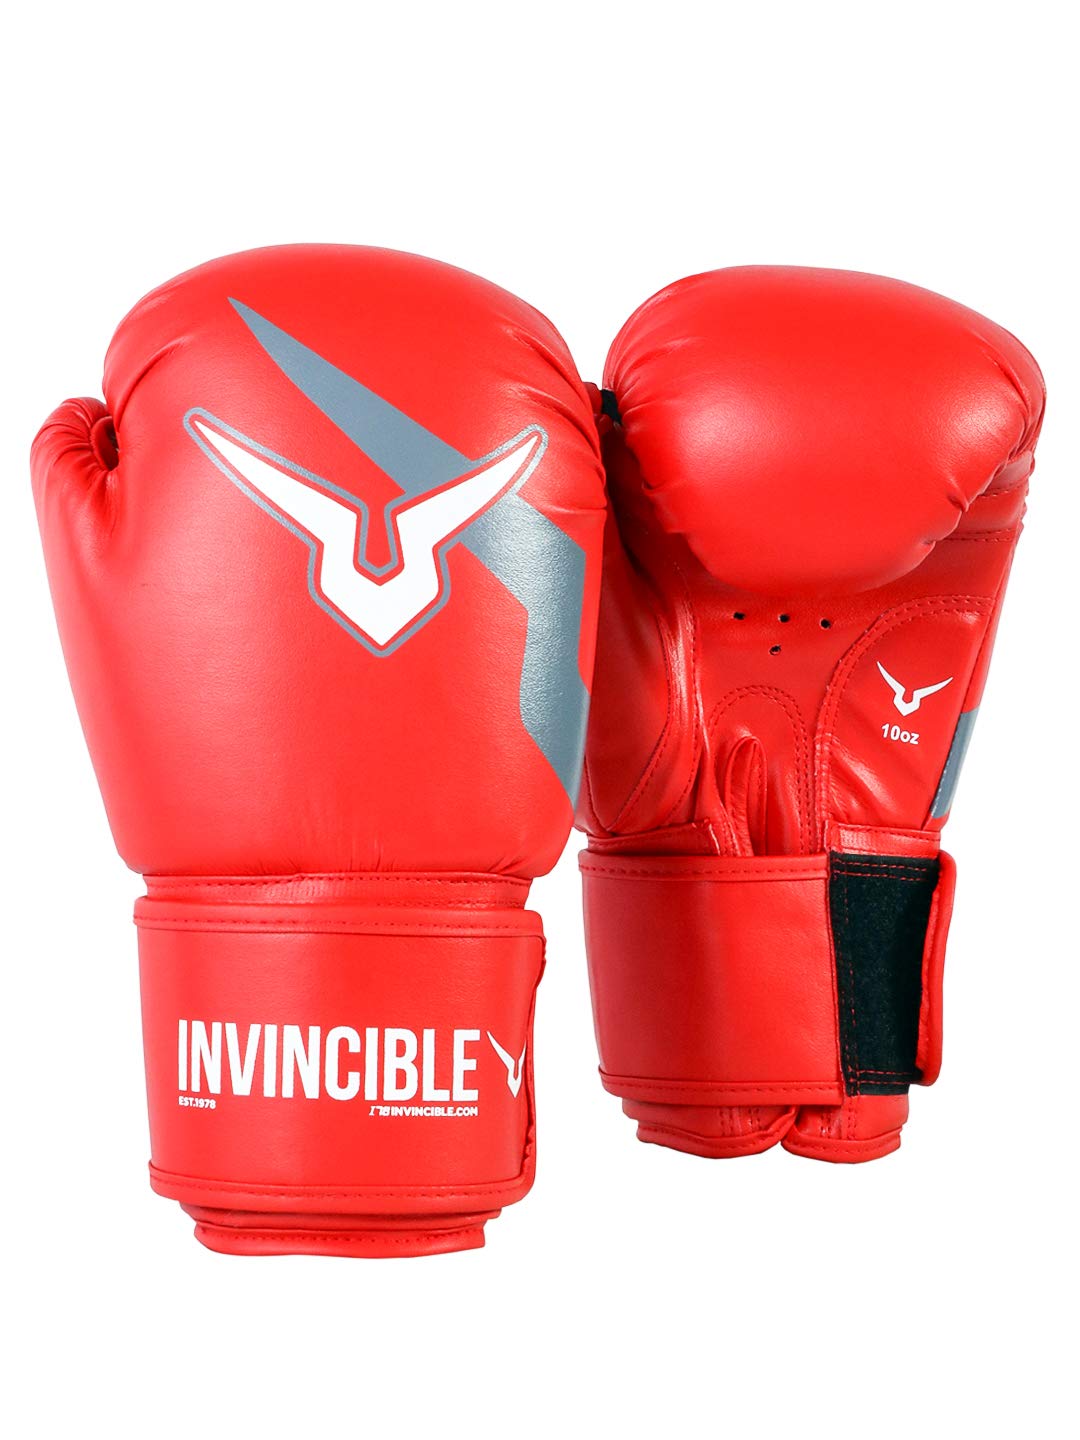 Invincible Amateur Training Gloves